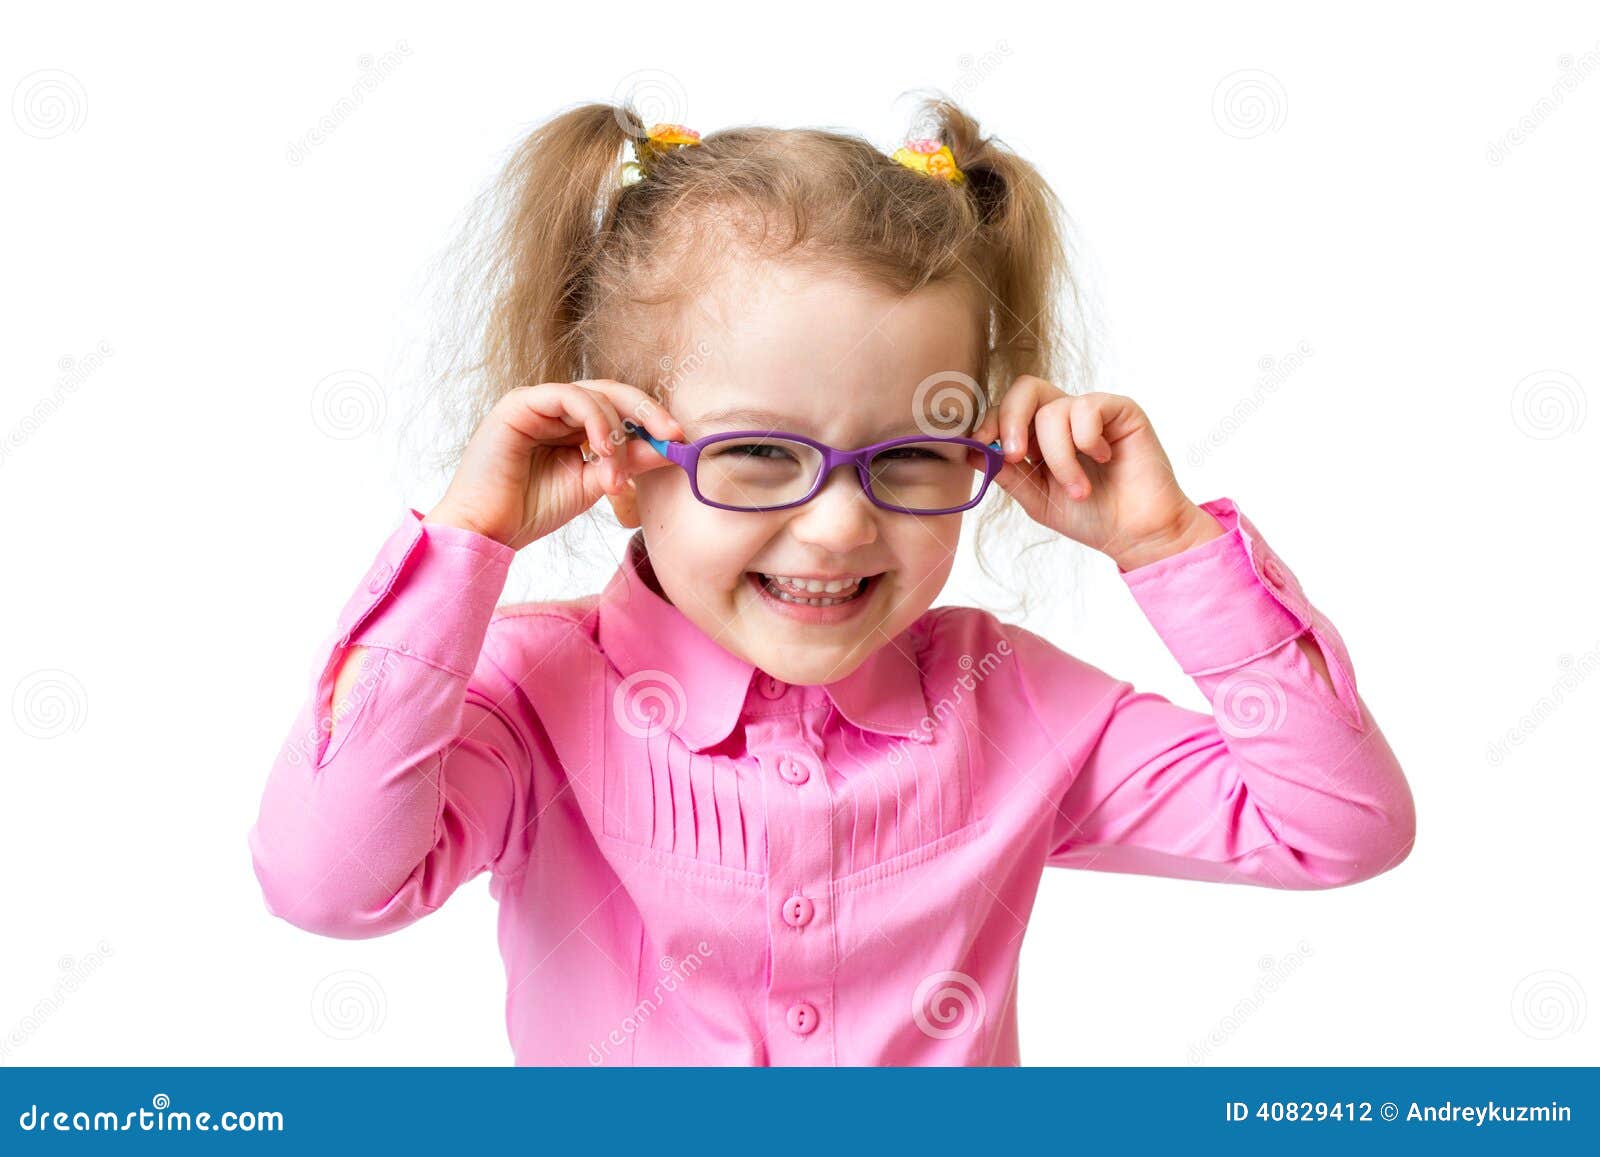 funny happy girl in glasses 